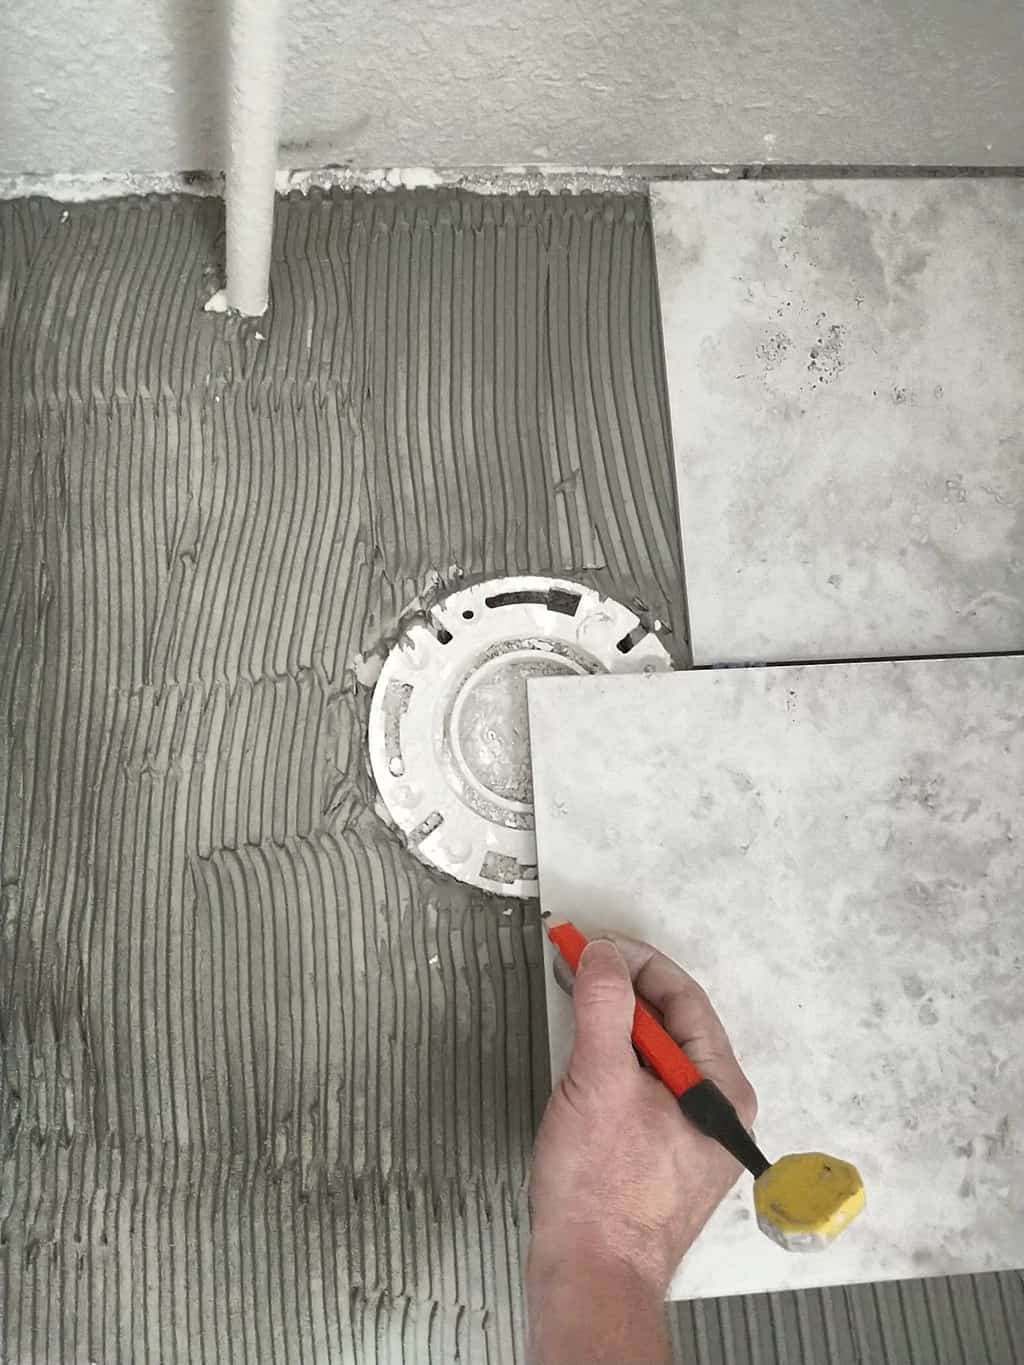 Measuring next tile for toilet flange